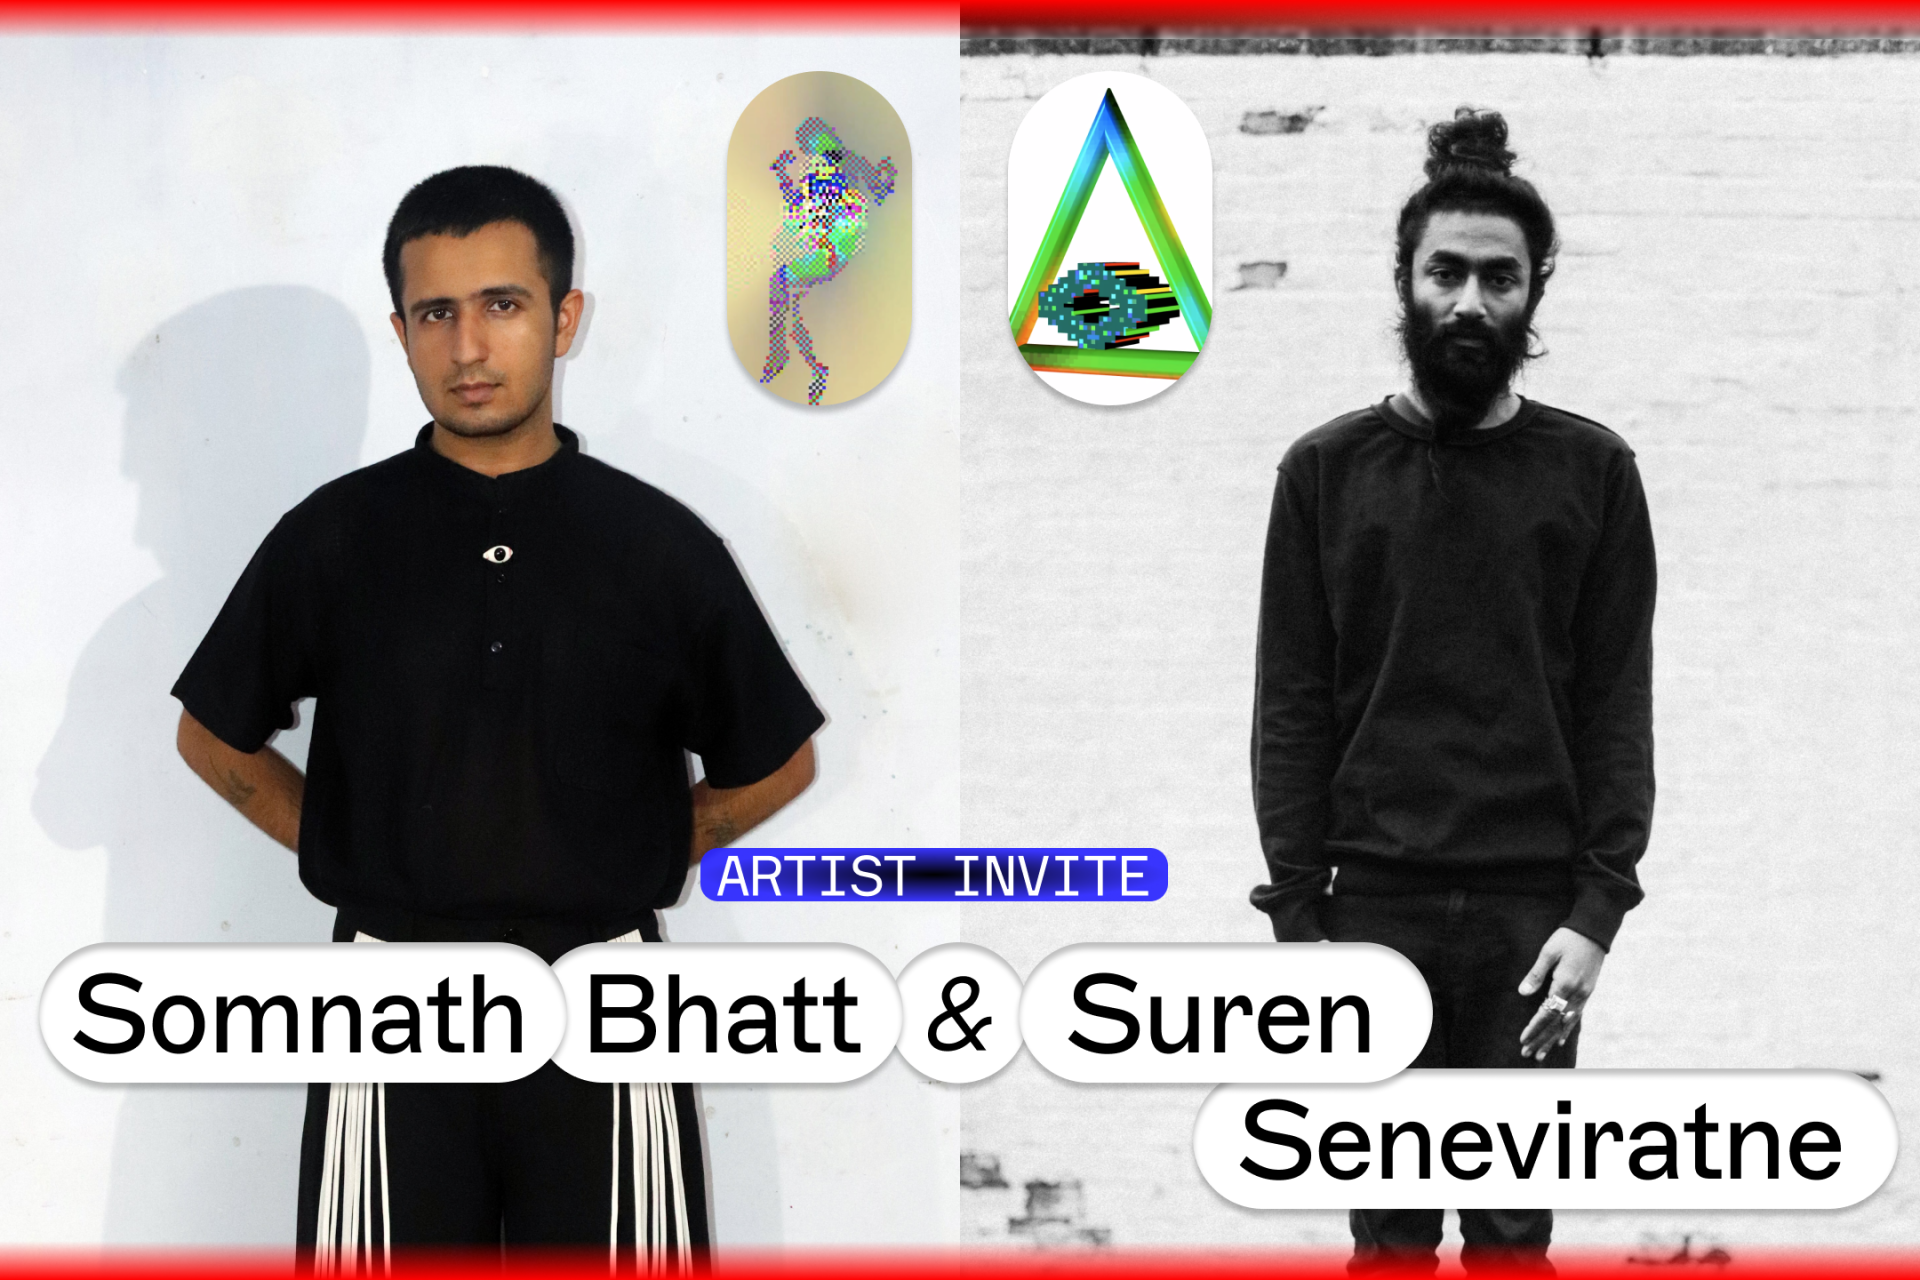 Artist Invite: Somnath Bhatt & Suren Seneviratne 